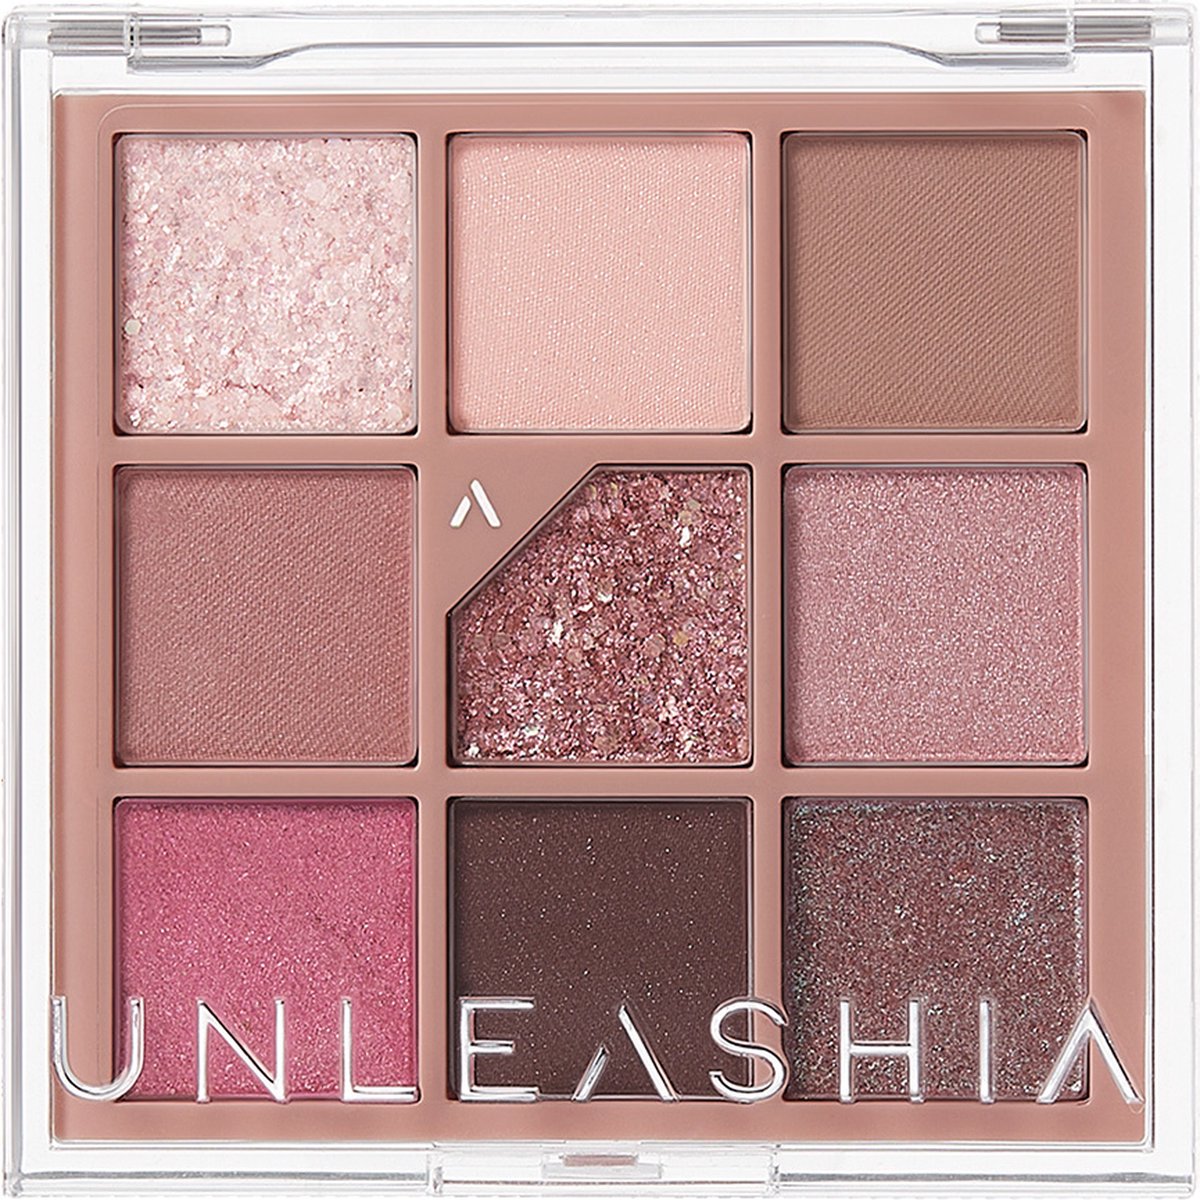 Unleashia Glitterpedia Eye Palette N°5 All of Dusty Rose 6.2 g - K Beauty